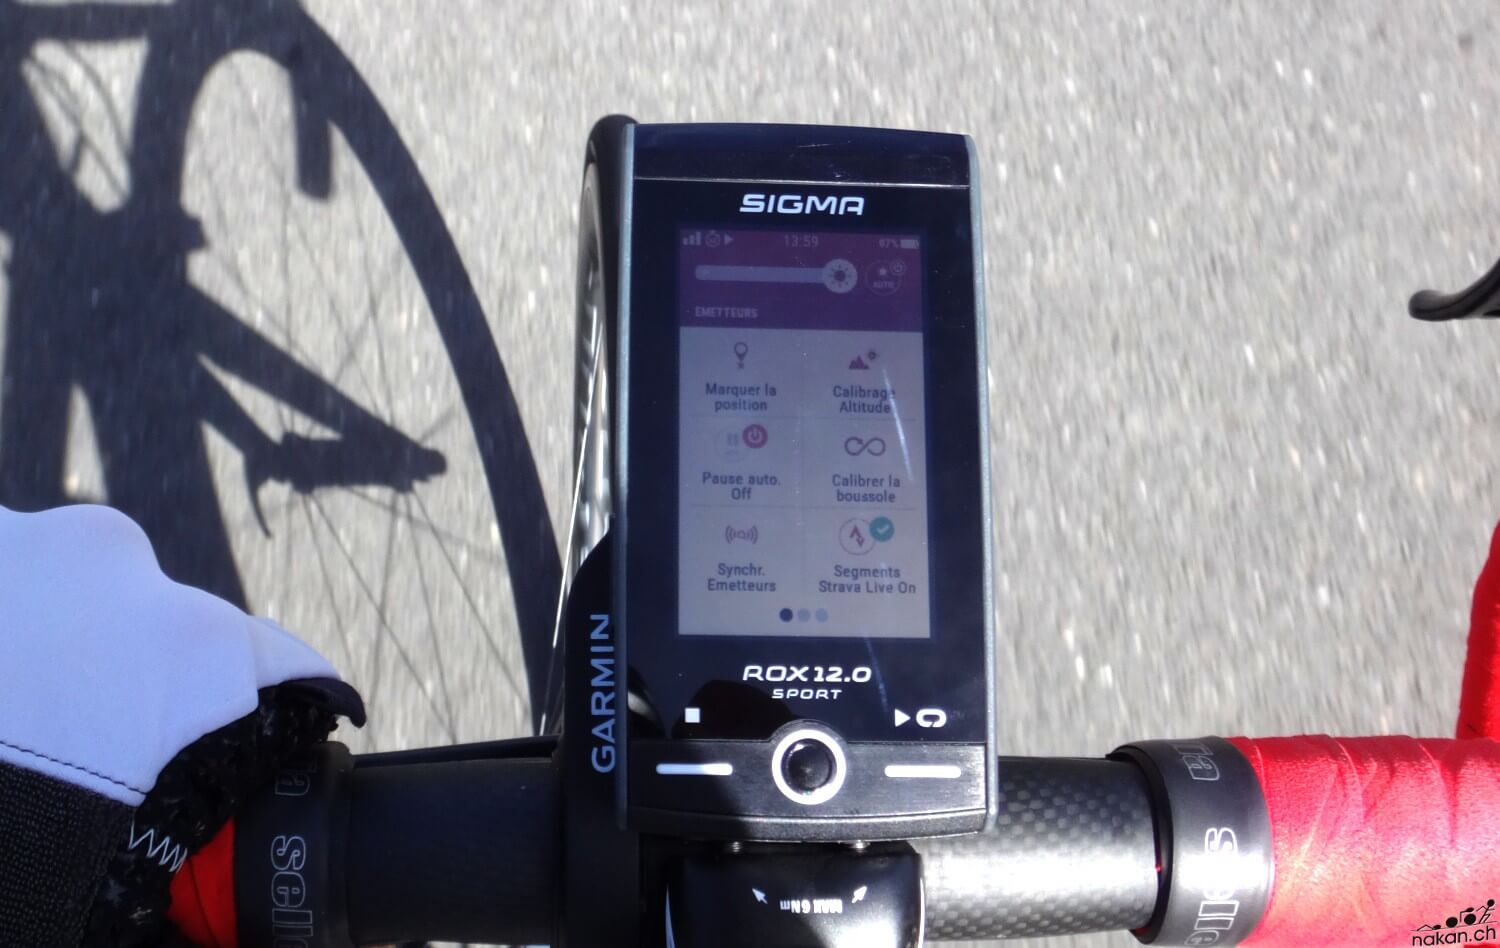 Compteur vélo GPS Sigma Rox 12 : la navigation pour vocation